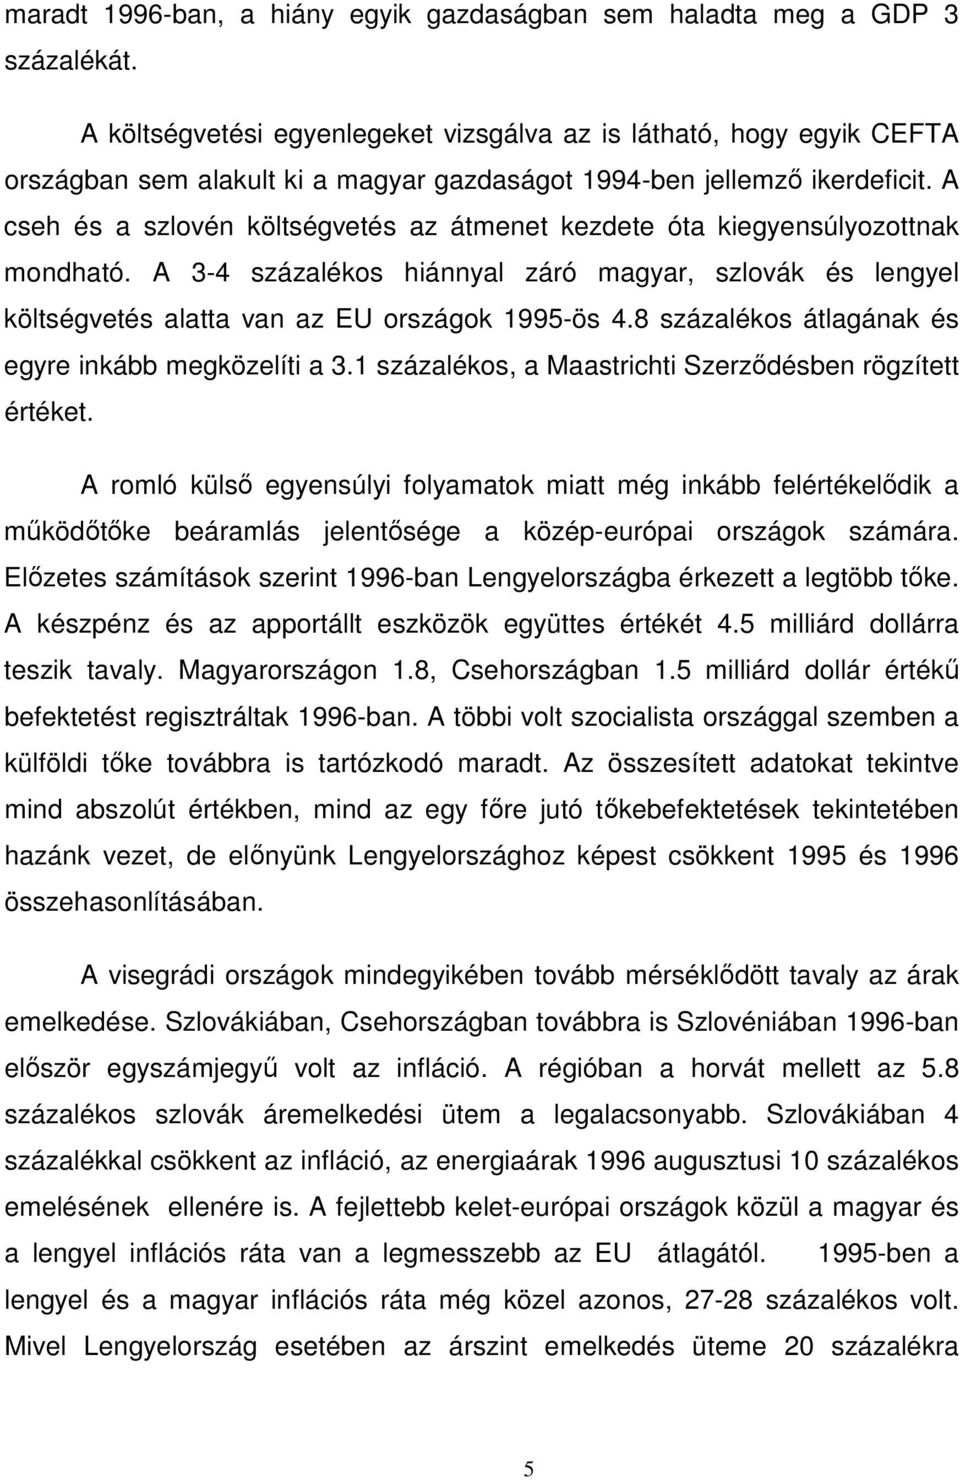 A cseh és a szlovén költségvetés az átmenet kezdete óta kiegyensúlyozottnak mondható. A 3-4 százalékos hiánnyal záró magyar, szlovák és lengyel költségvetés alatta van az EU országok 1995-ös 4.